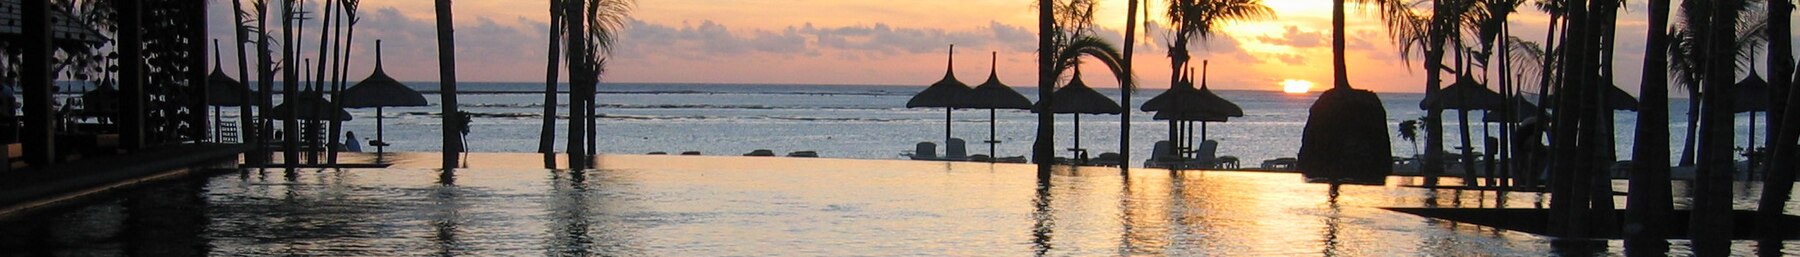 Mauritius banner Sunset.jpg